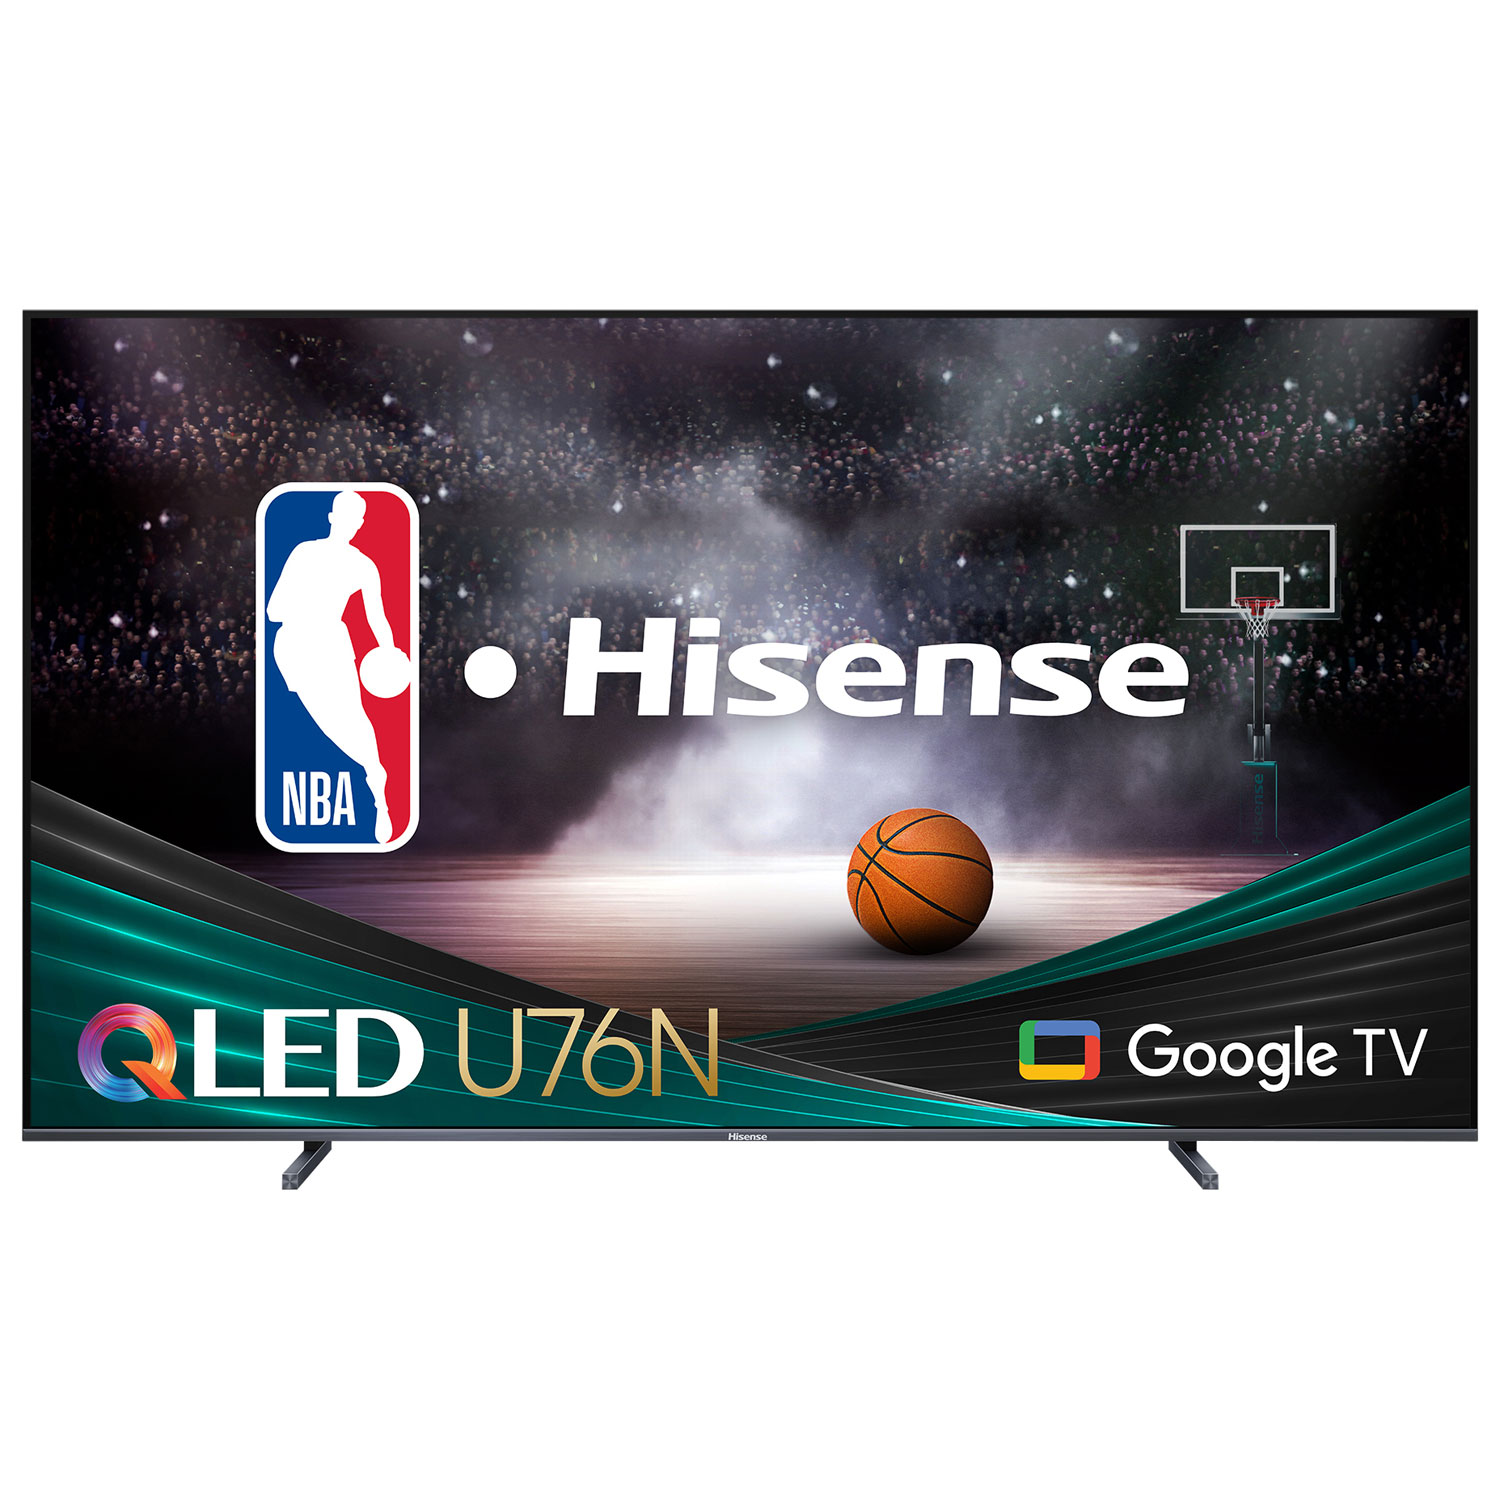 Hisense 100" 4K UHD HDR QLED Smart Google TV (100U76N) - 2024